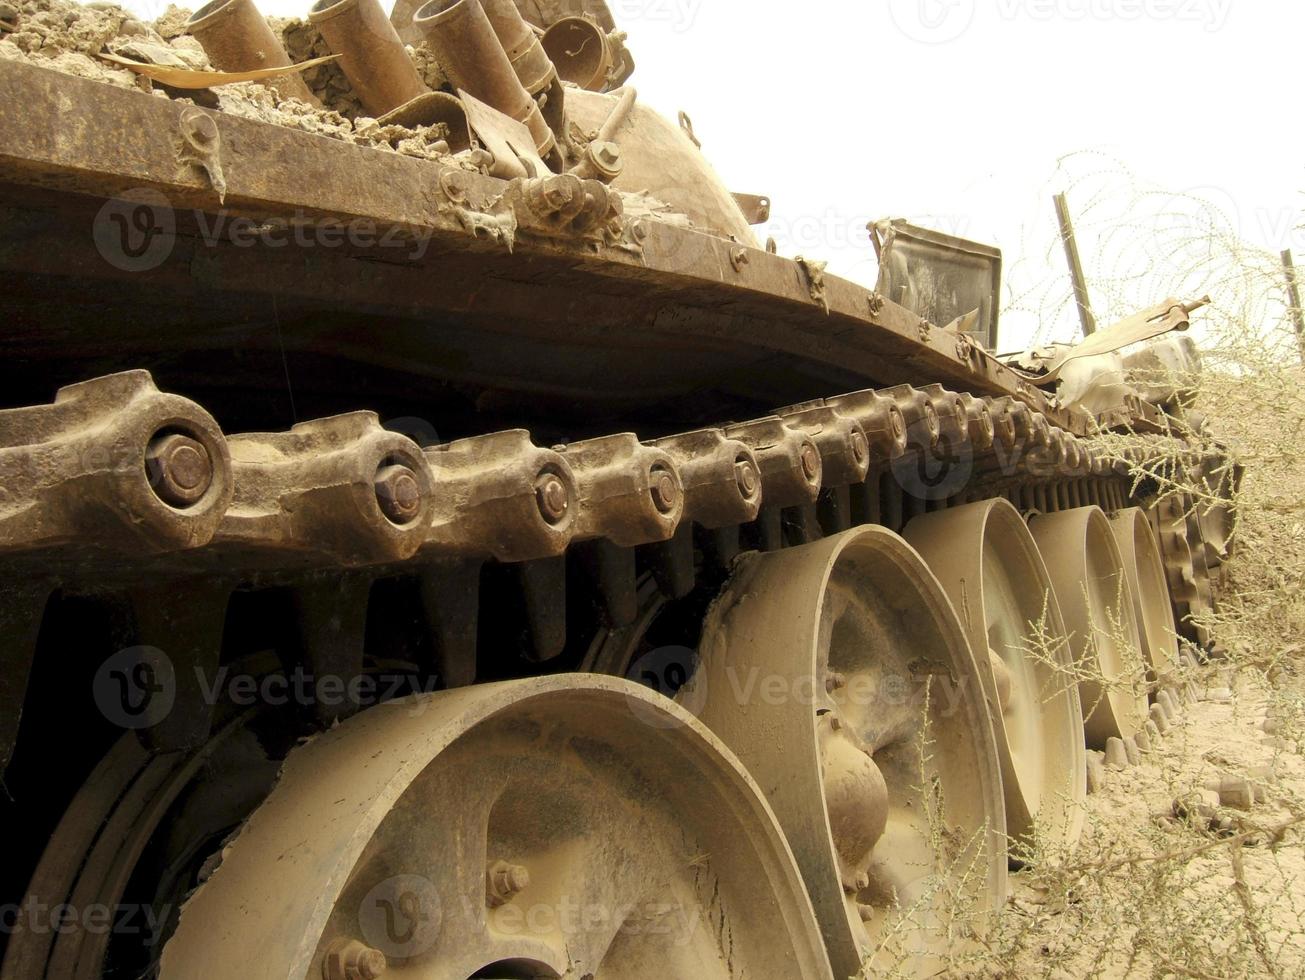 militaire legervoertuig tank op rupsen met vat na zegevierende oorlog foto